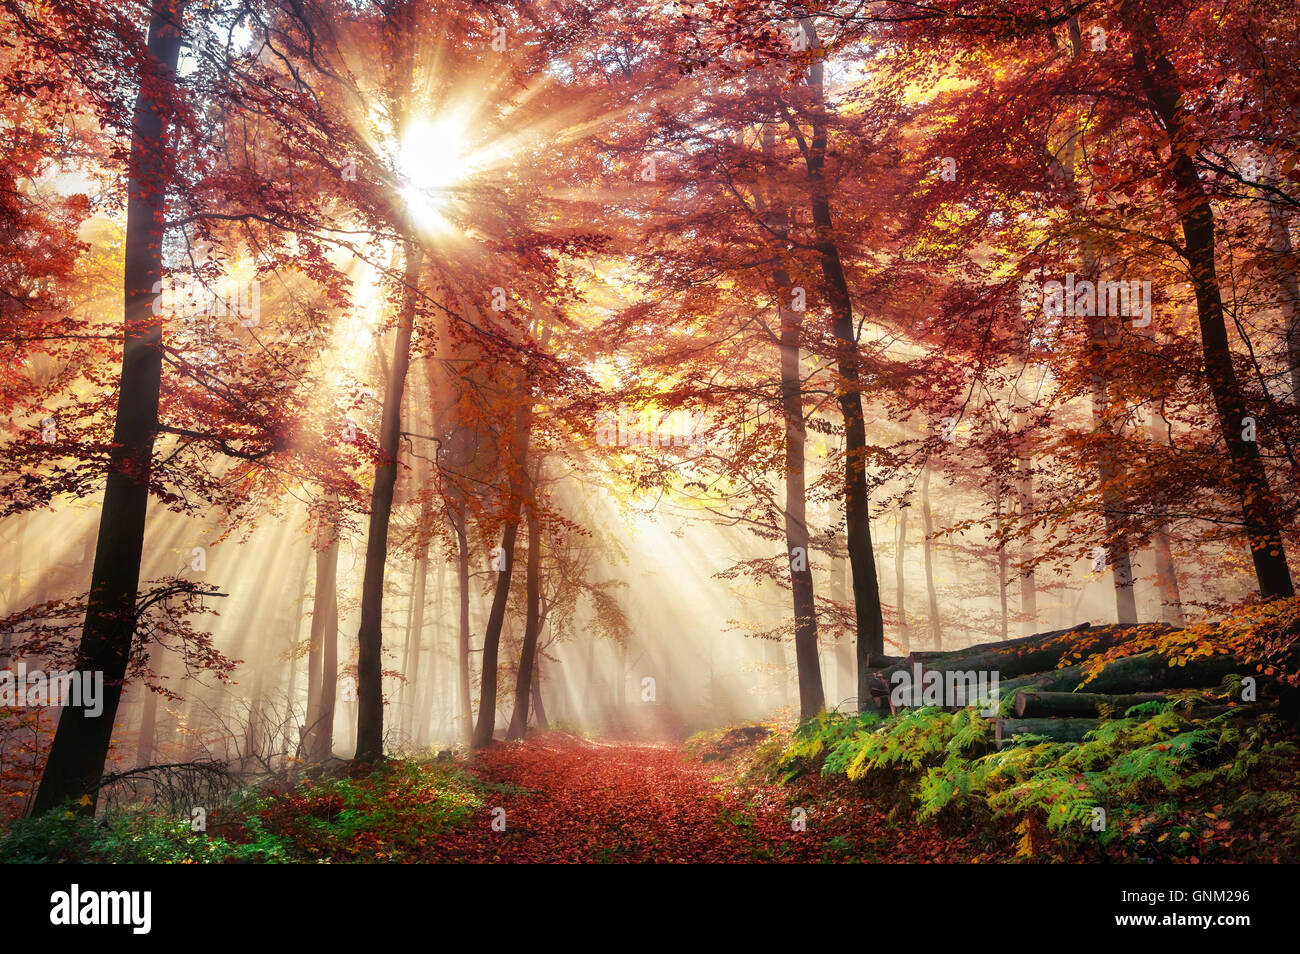 Strahlen des Berstens Sonnenlicht in einem nebligen Wald mit roten und goldenen Farben im Herbst Stockfoto